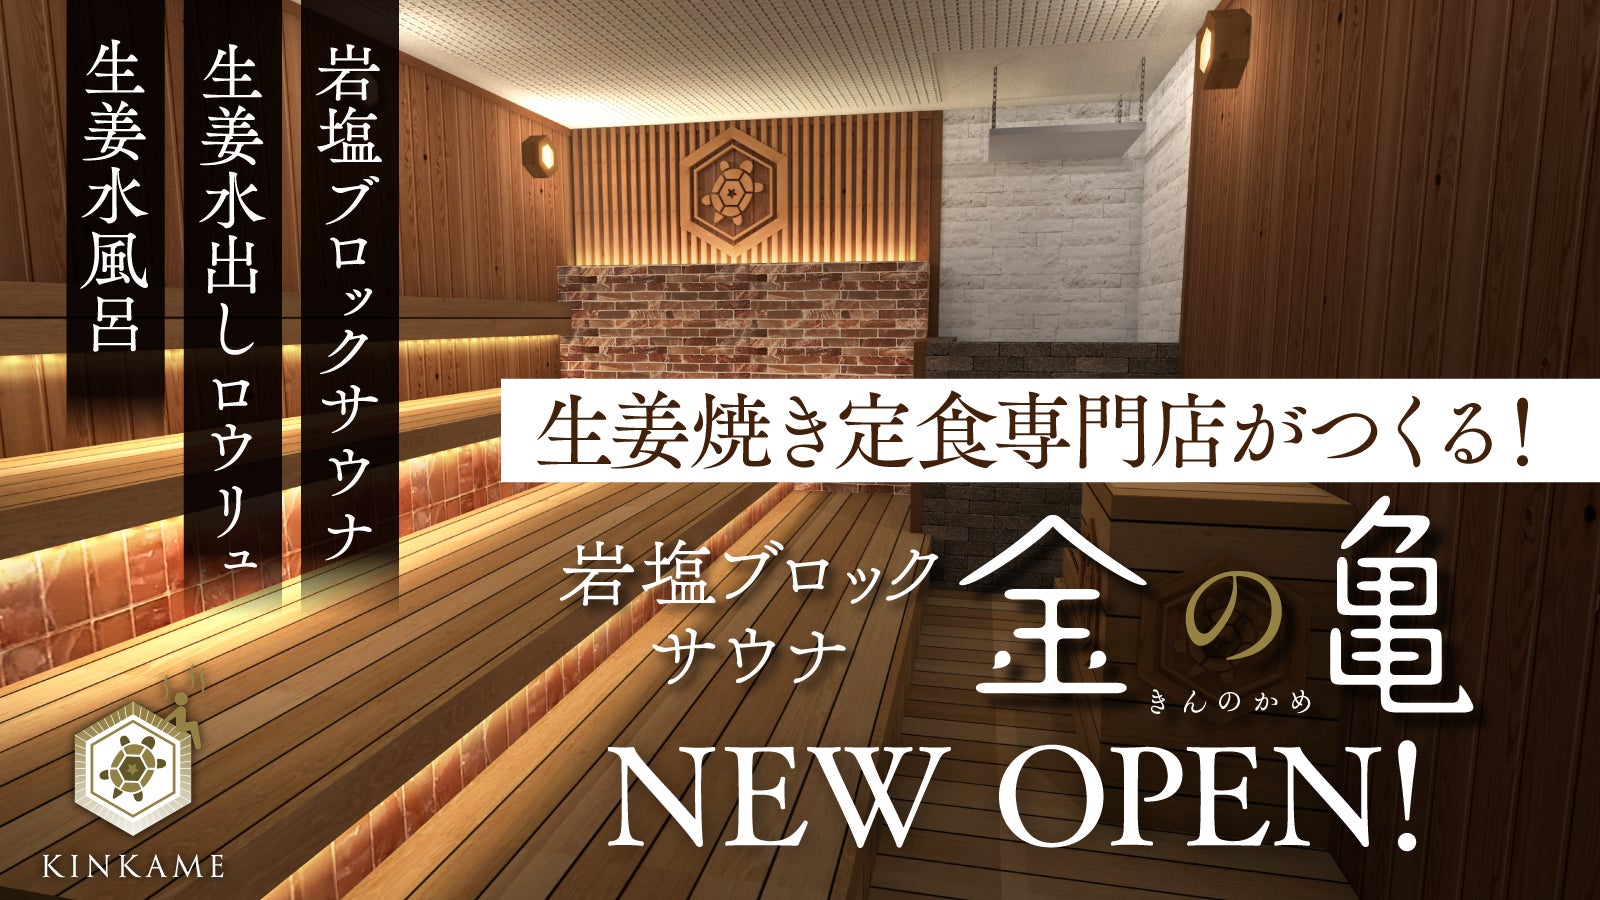 東京都杉並区に新しくオープンした「高井戸歯科・美容クリニック」にLEDビジョンを導入しました。